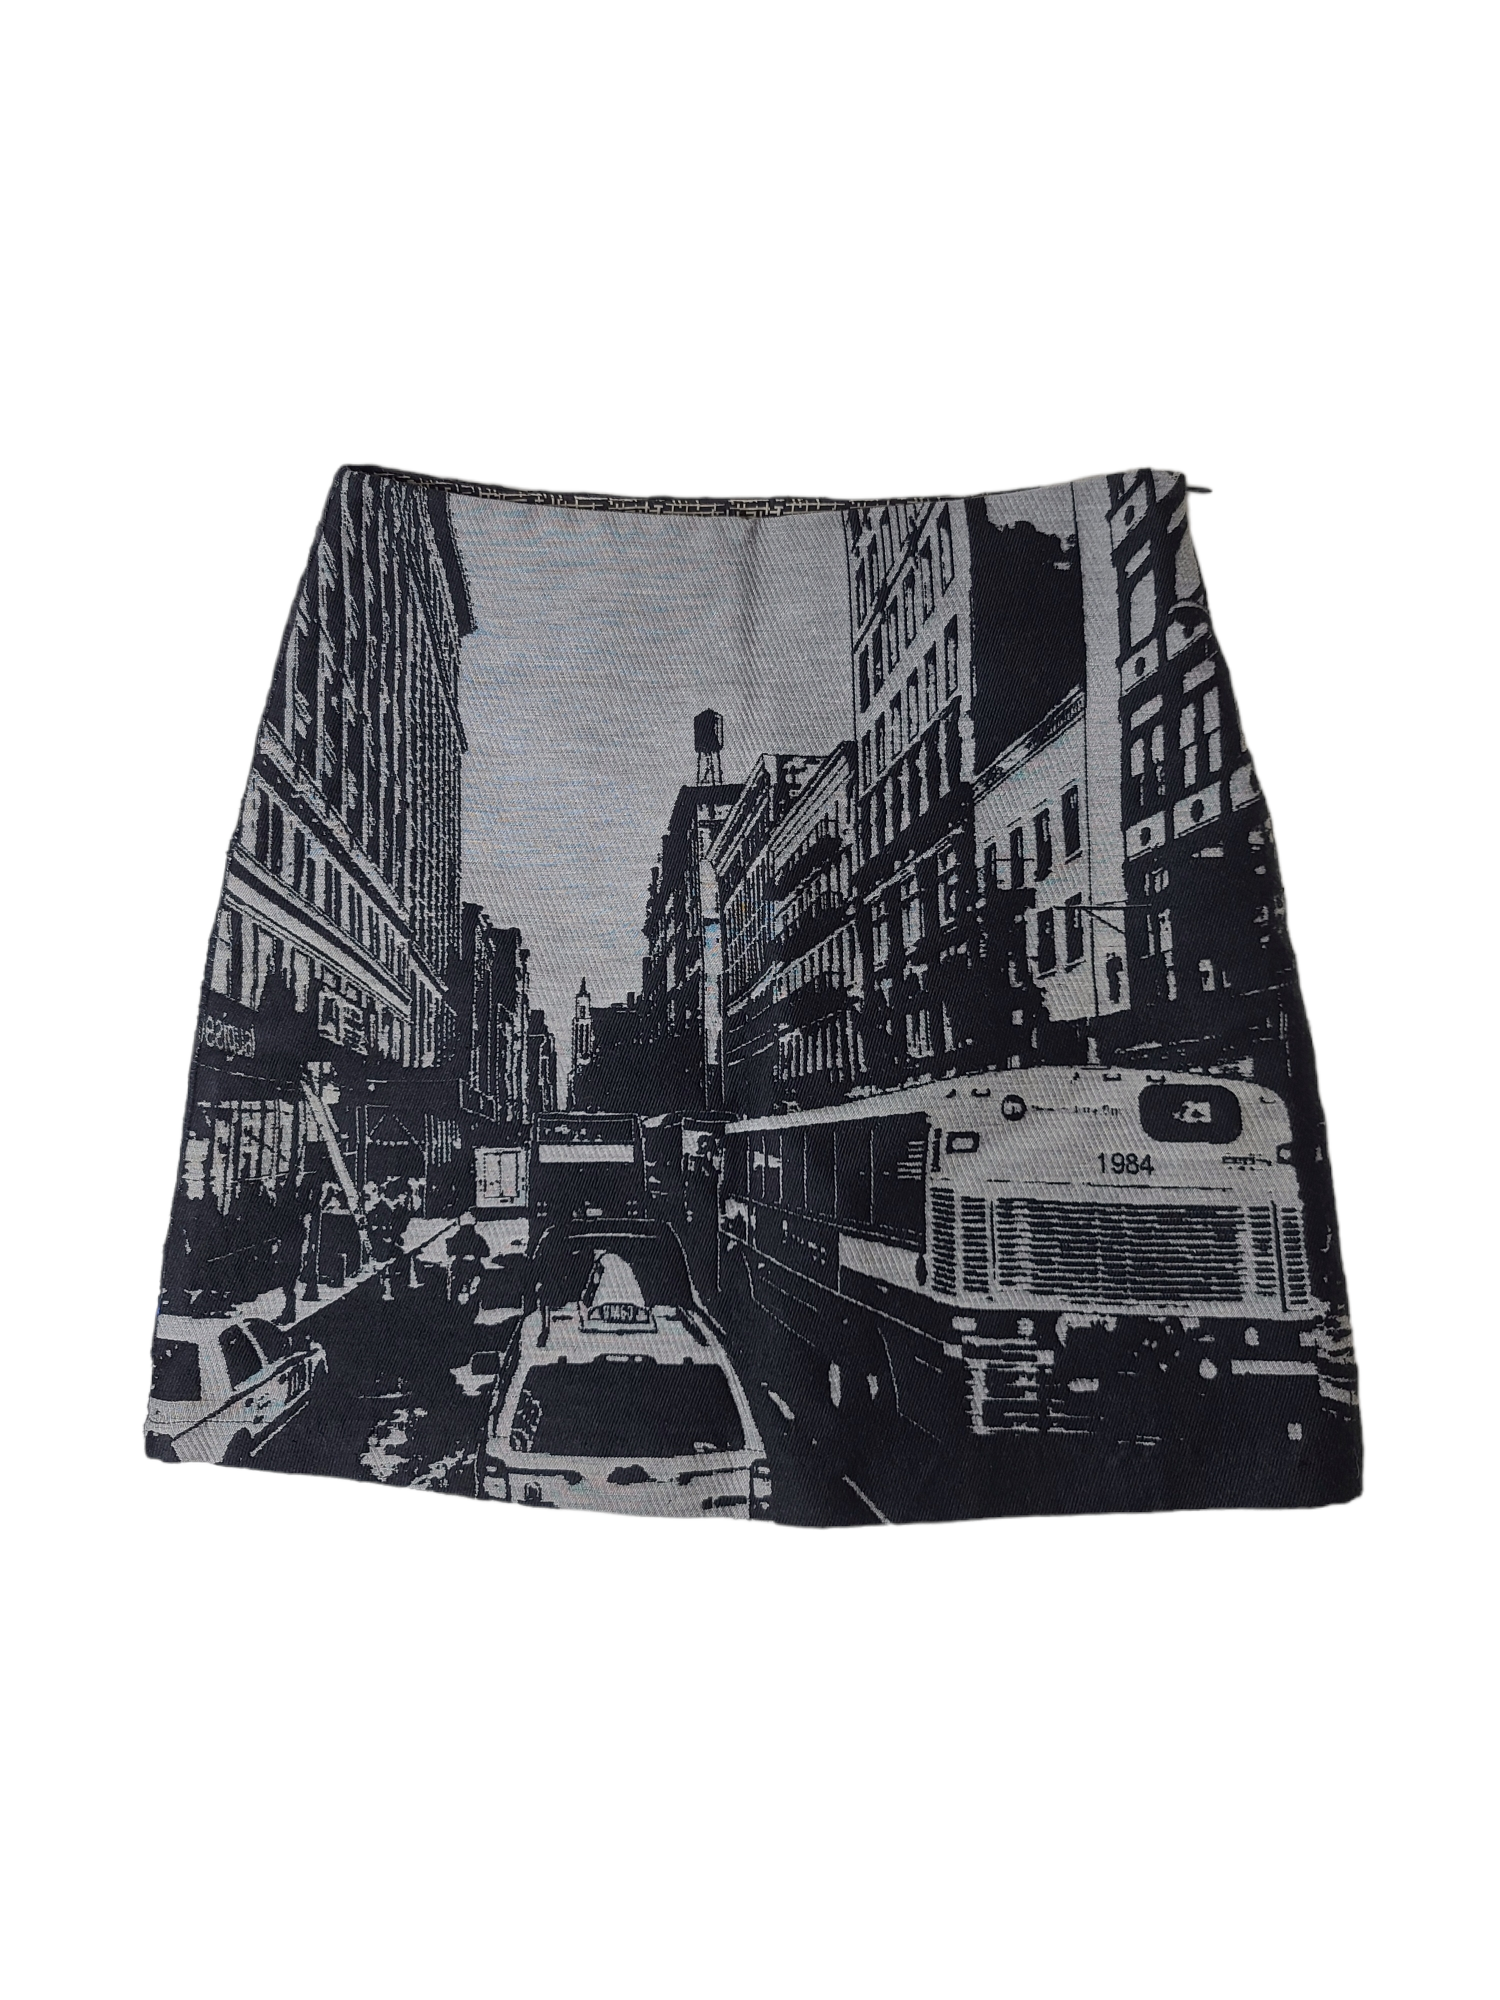 Jupe imprime noir et blanc archive fashion vintage y2k cybery2k subversive rare weird printed paris france new york